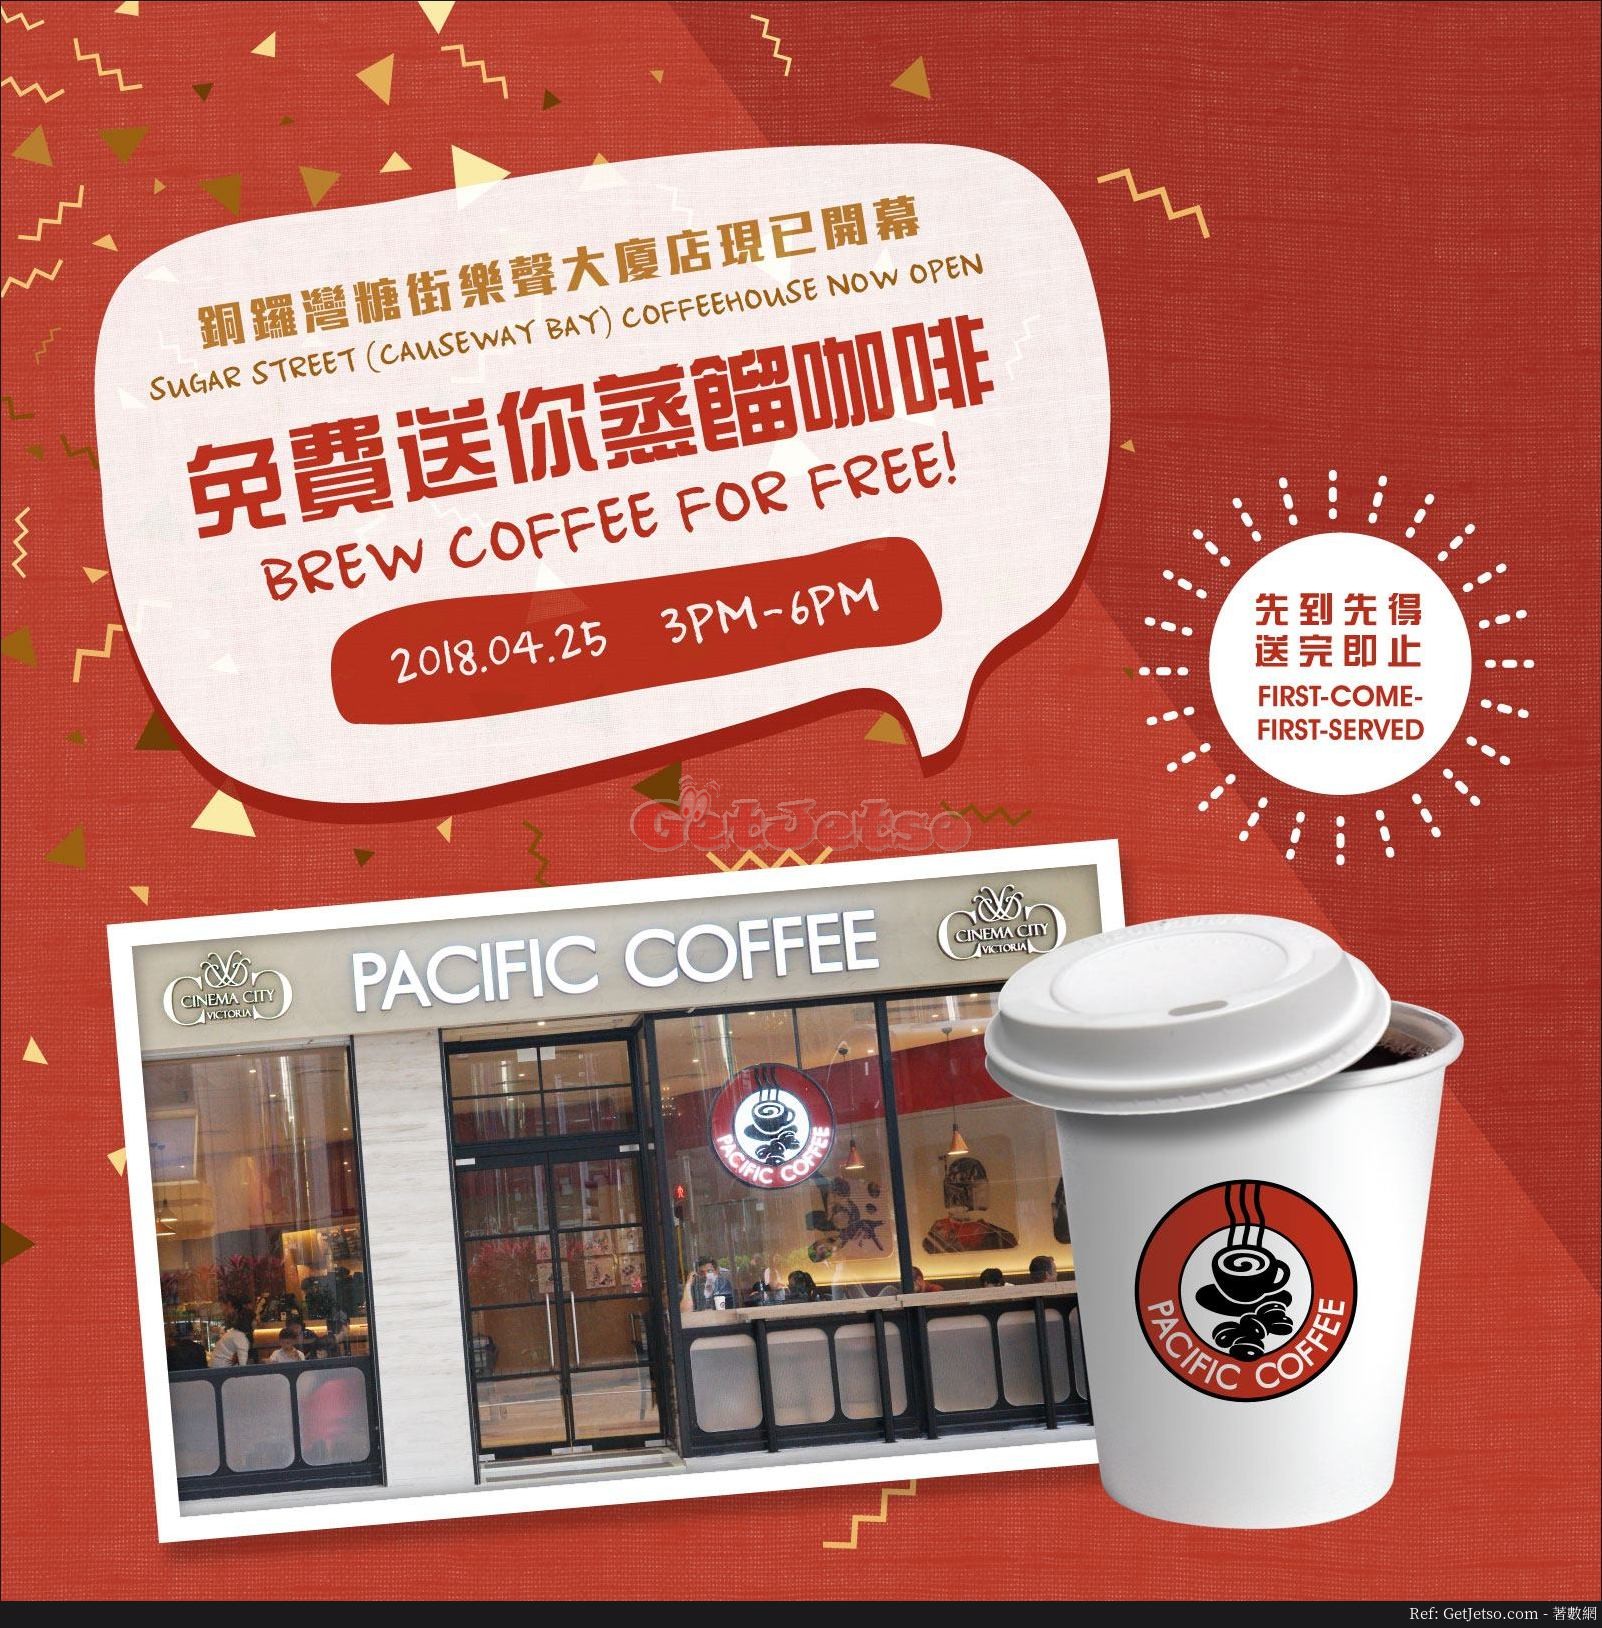 Pacific Coffee 銅鑼灣糖街店開幕，免費送蒸餾咖啡(18年4月25日)圖片1